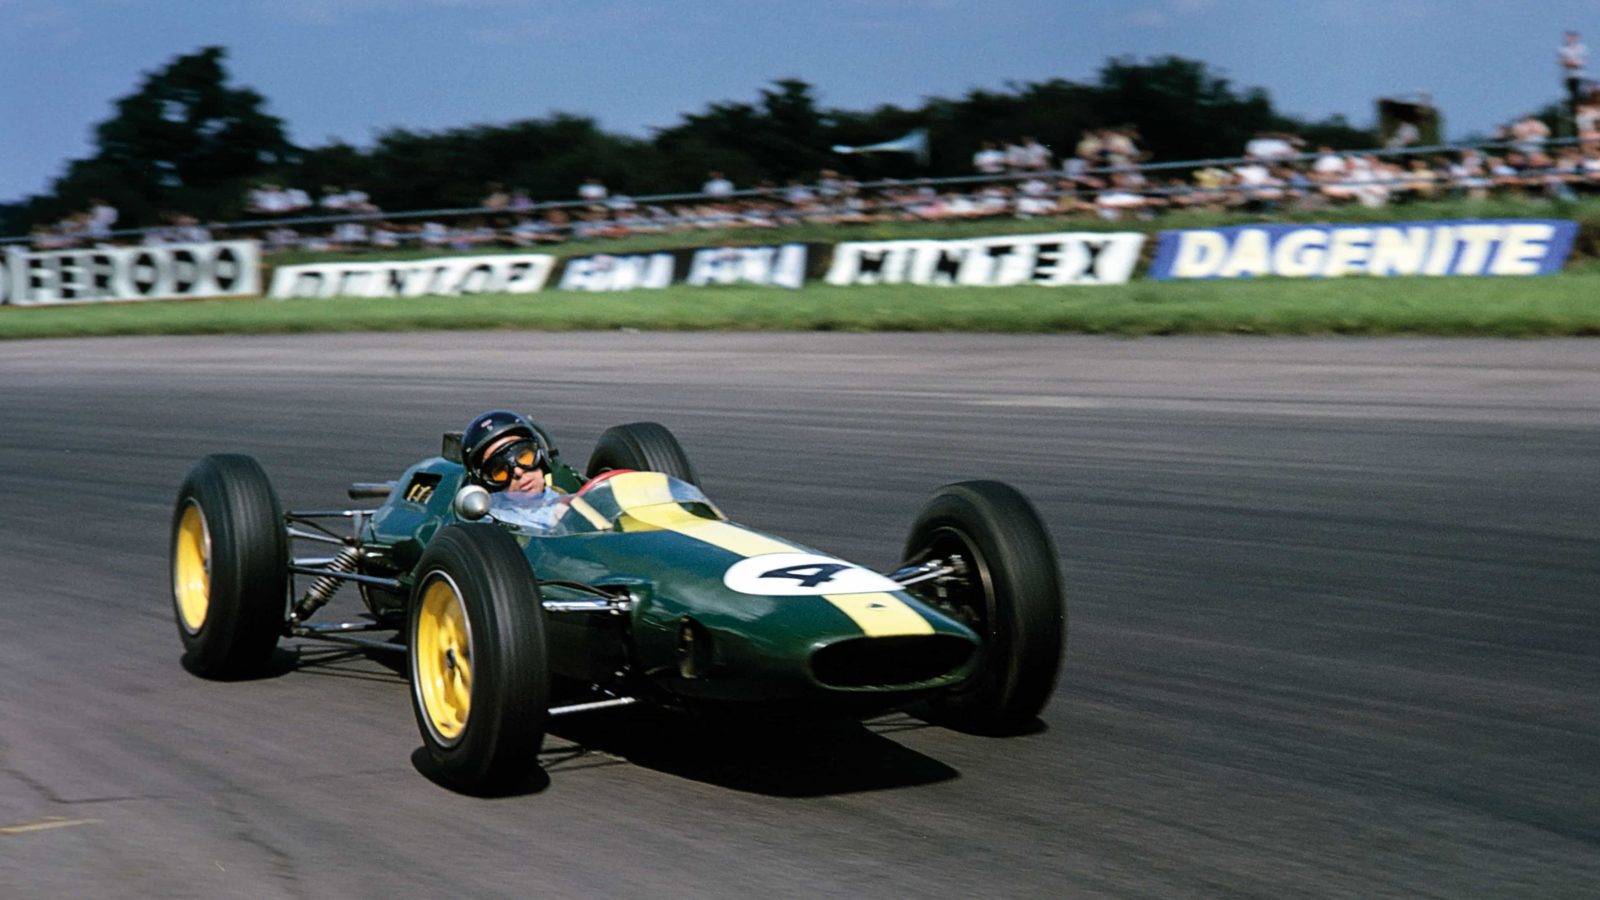 Jim Clark in the Lotus 25